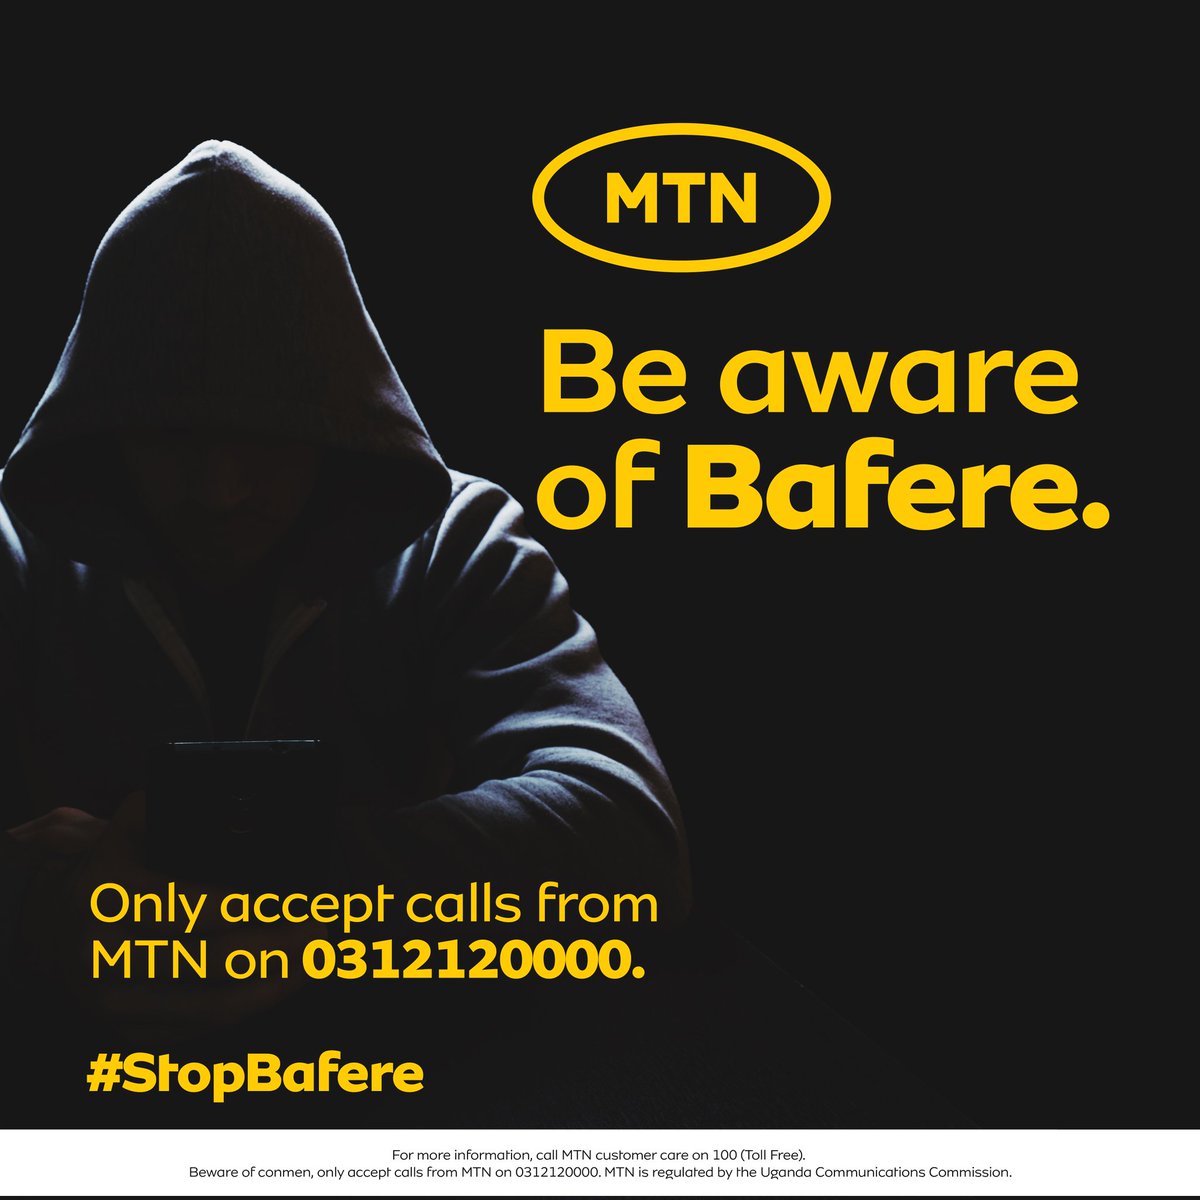 Beware of conmen. #StopBafere.